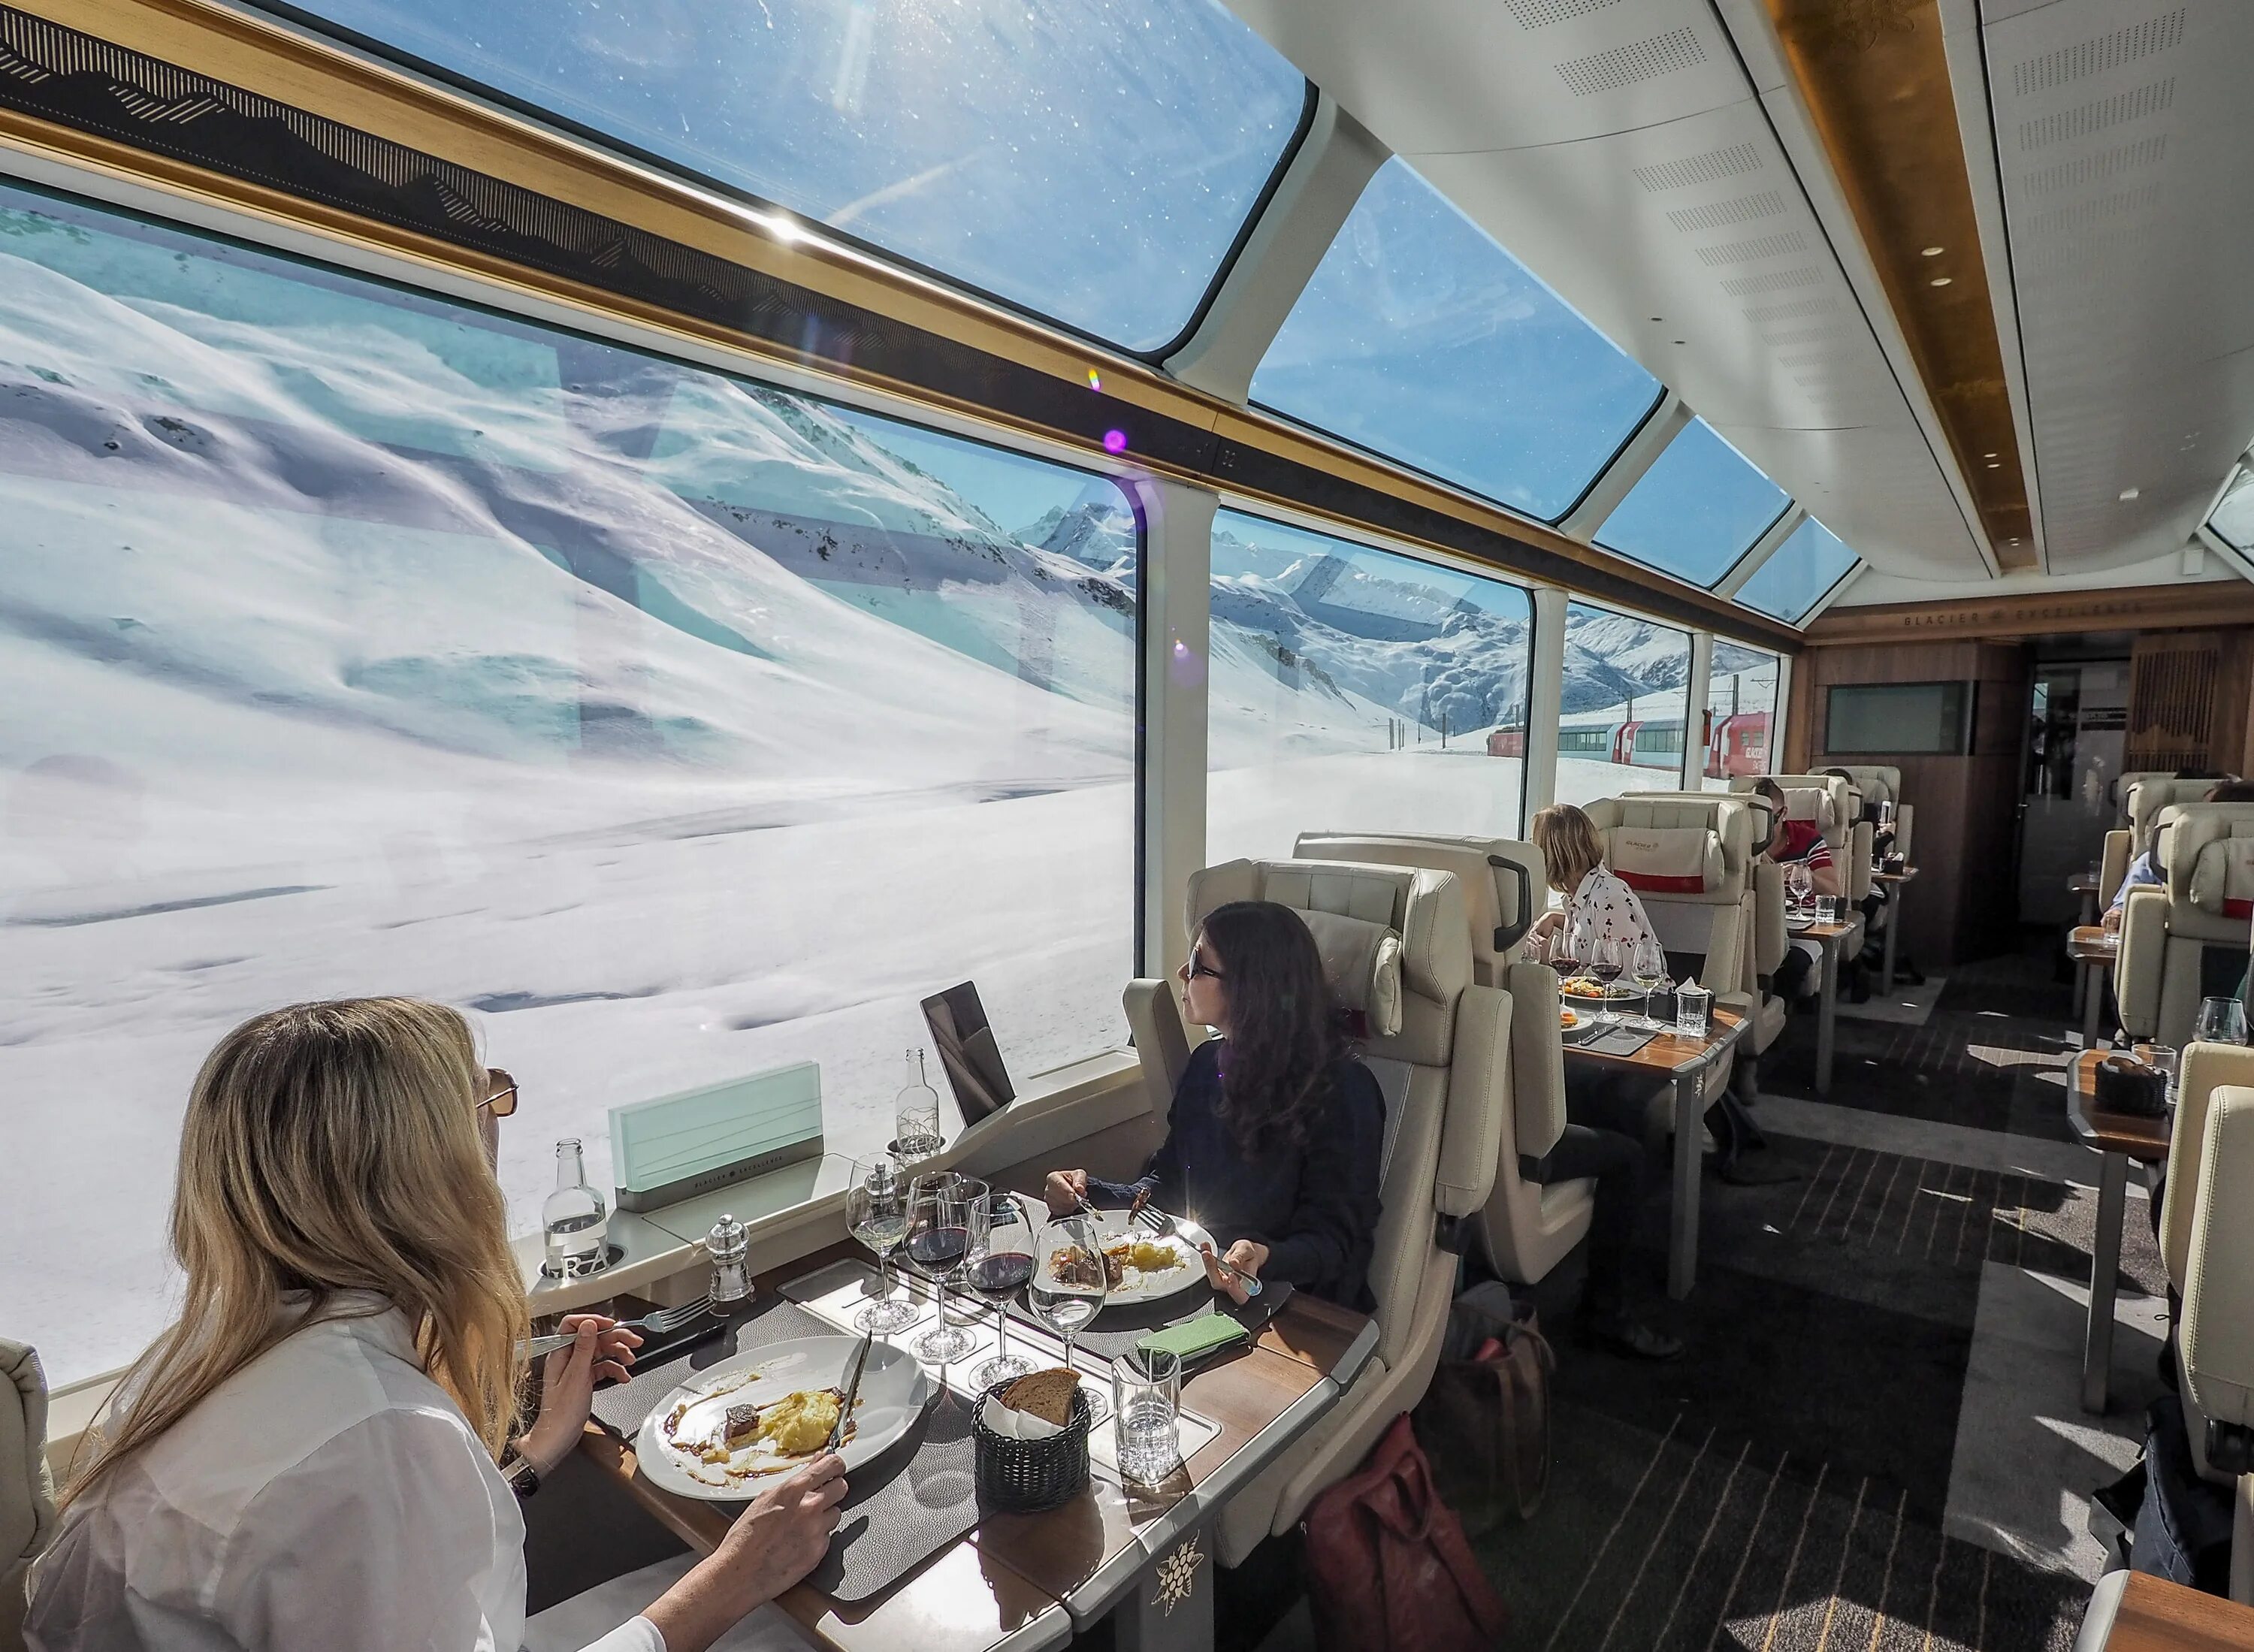 Швейцария поезд ледяной экспресс. Панорамный поезд в Швейцарии Glacier Express. Ледниковый экспресс — Glacier Express. Панорамный поезд Glacier Express (Церматт - Санкт-Мориц, Давос). Путешествие на туристическом поезде